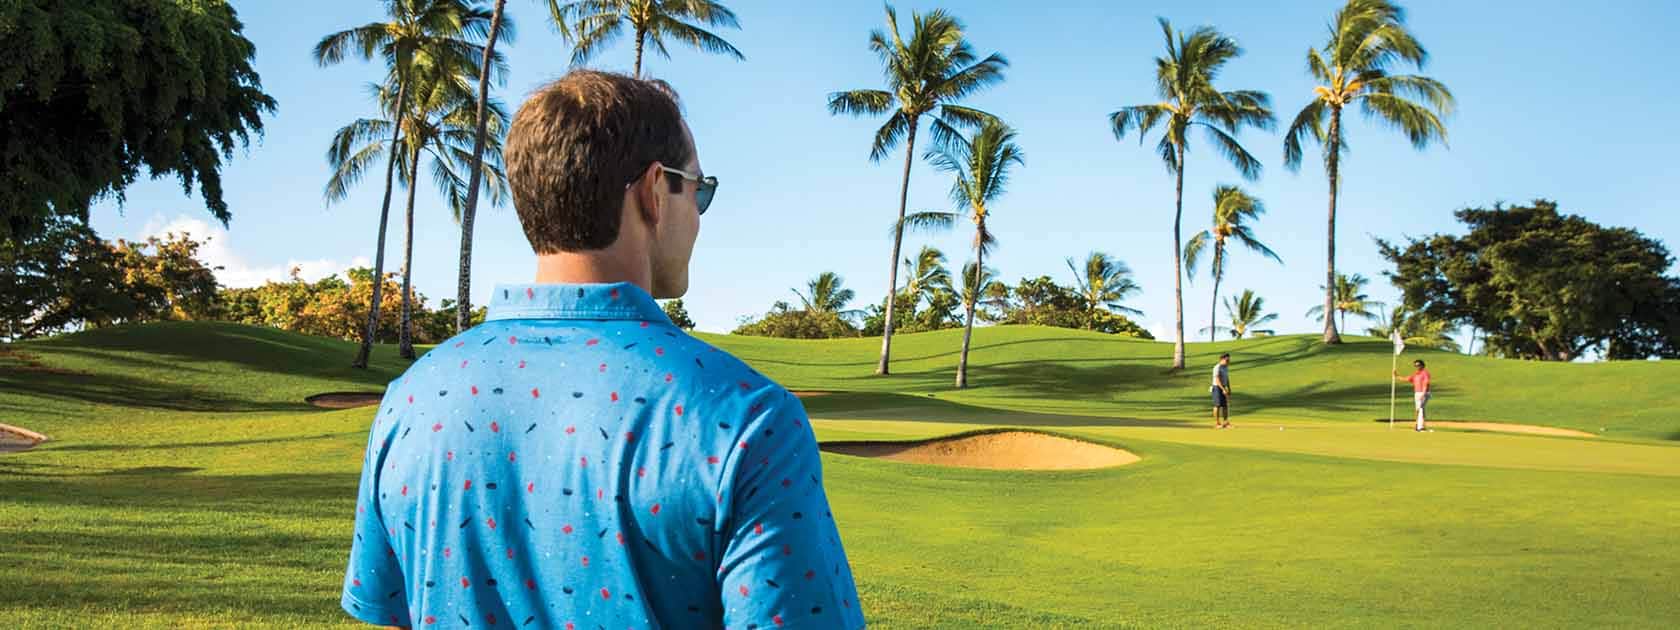 Mann mit blauem Hemd auf einem Golfplatz mit Palmen, der anderen Golfern zuschaut